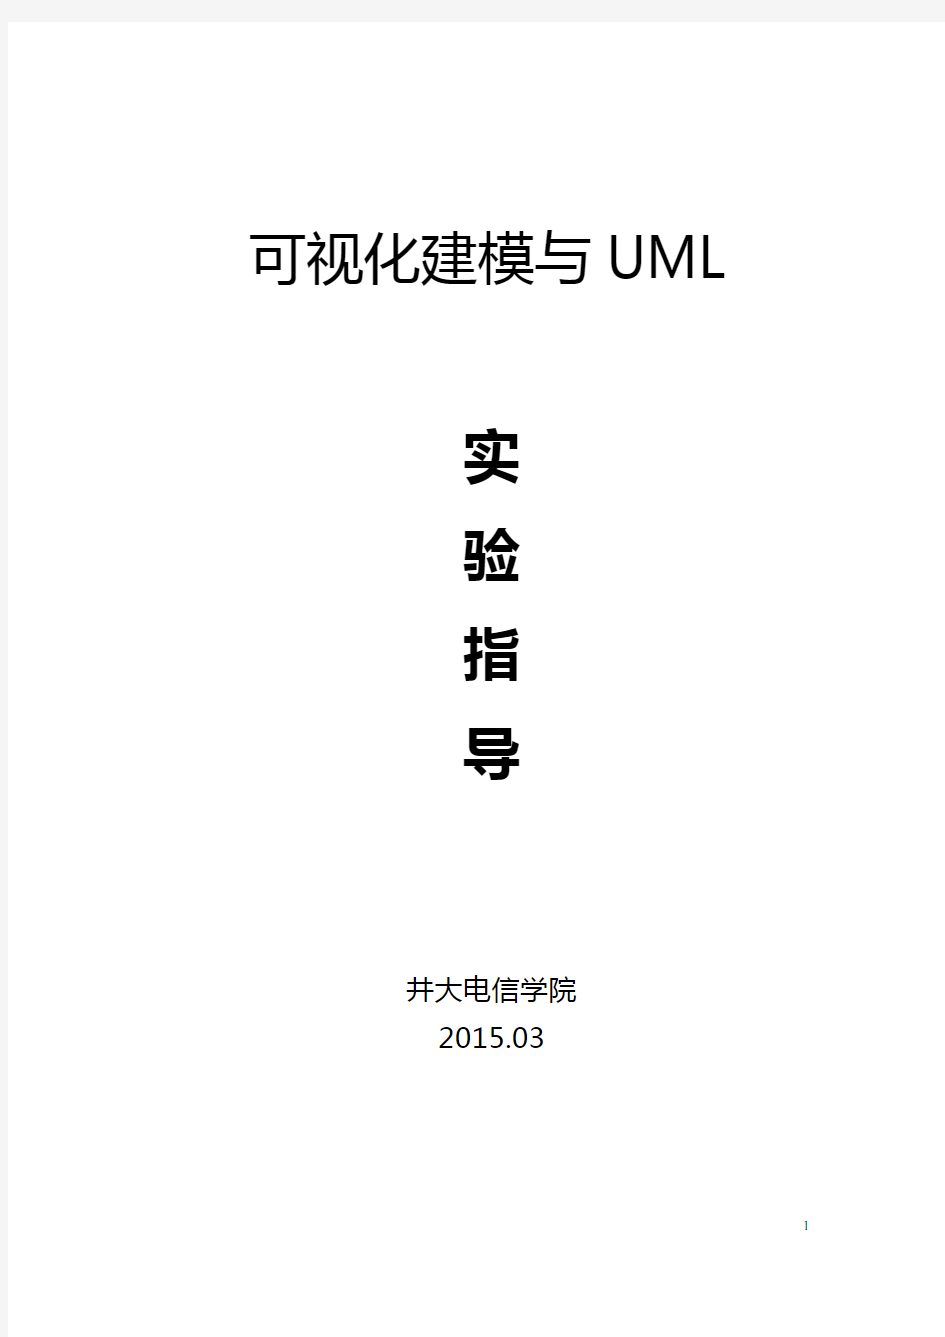 《可视化建模与UML》实验15指导教案要点.doc